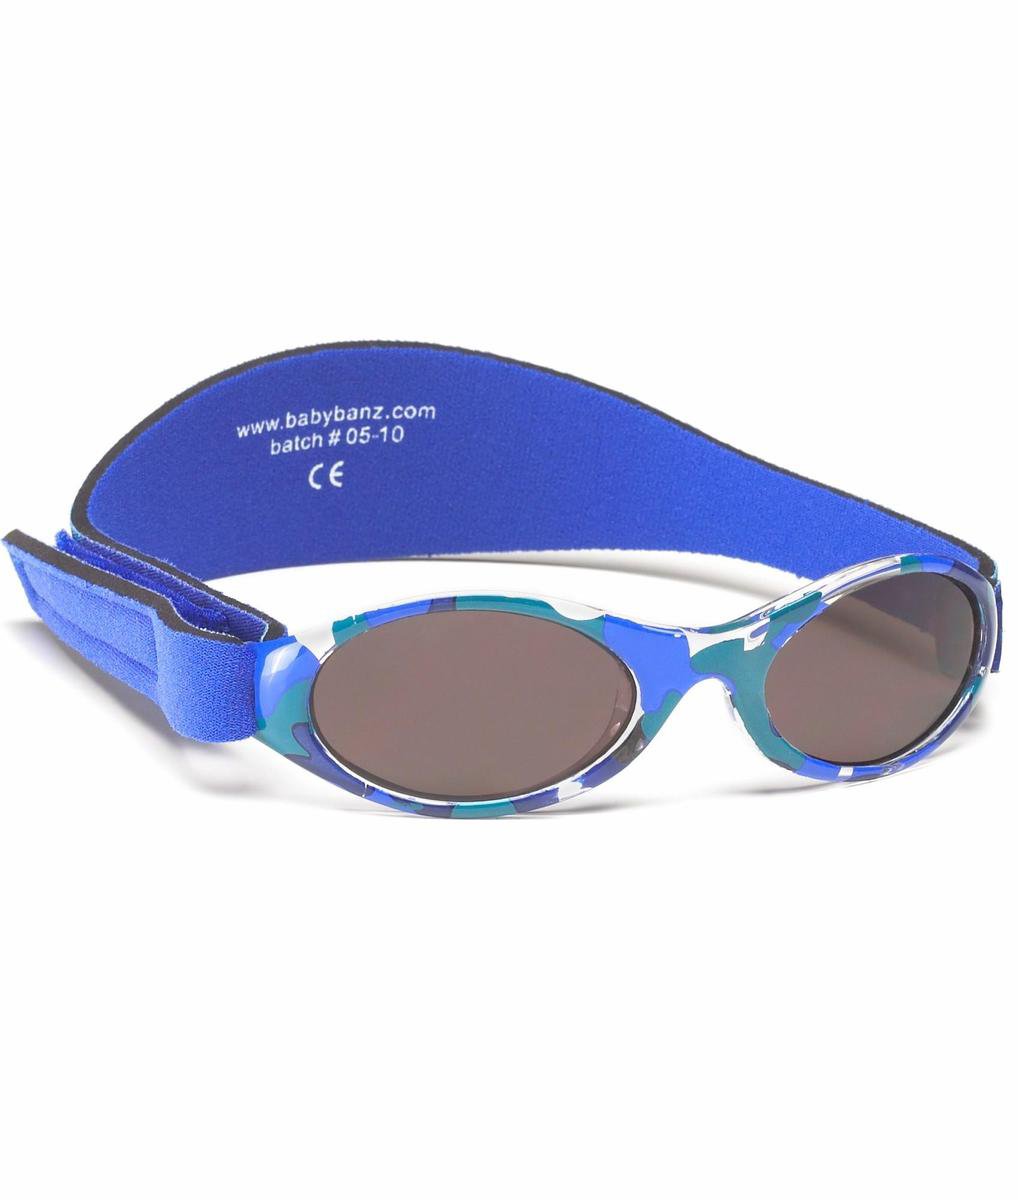 Banz - UV-beschermende zonnebril voor kinderen - Bubzee - Blauw Camo - maat Onesize (2-5yrs)